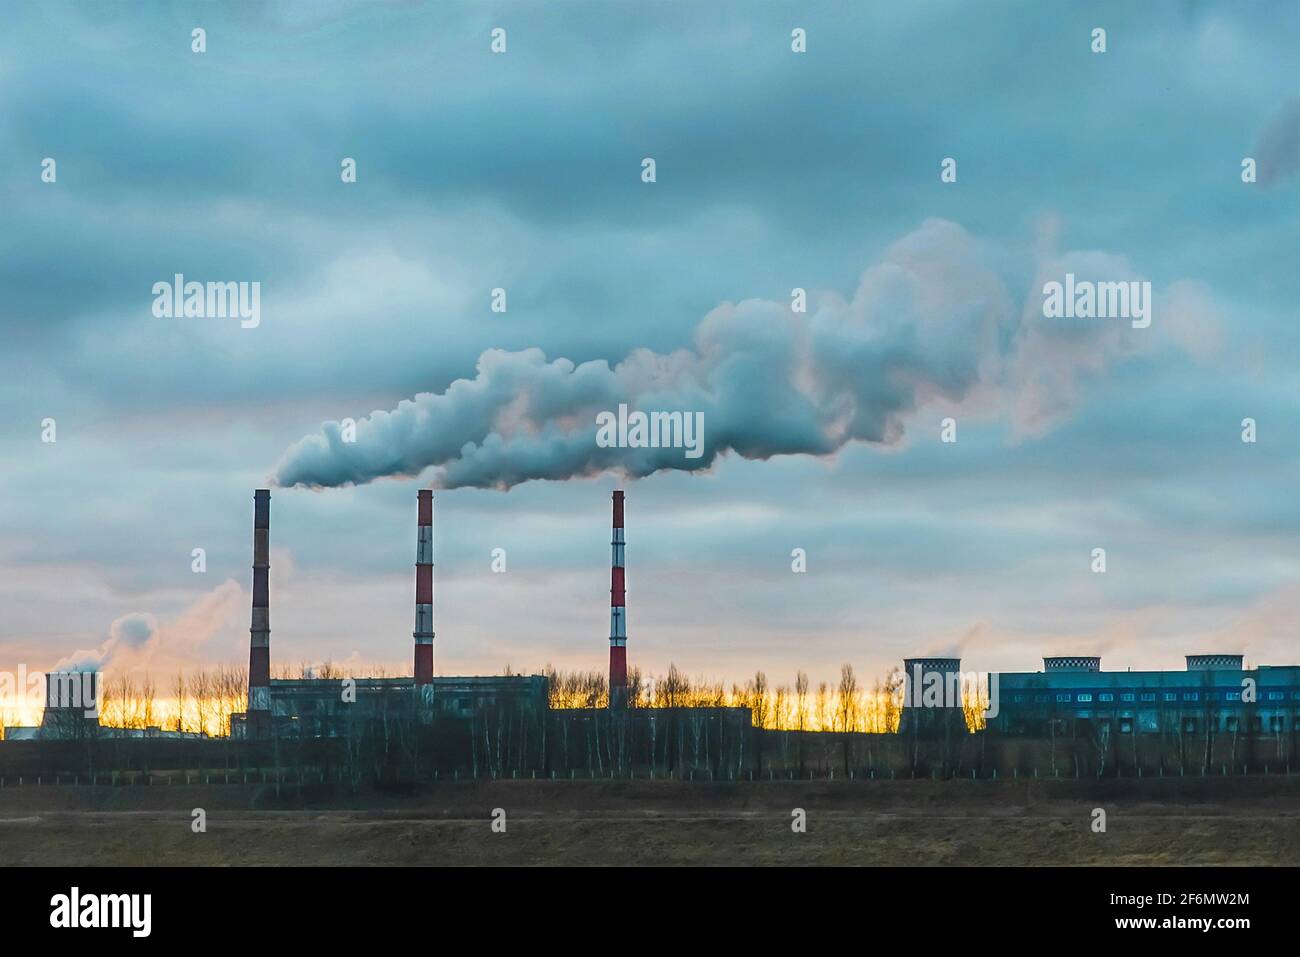 Umweltverschmutzung, Umweltprobleme, Rauch aus dem Schornstein einer Industrieanlage oder eines thermischen Kraftwerks gegen einen wolkigen blauen Himmel. Stockfoto